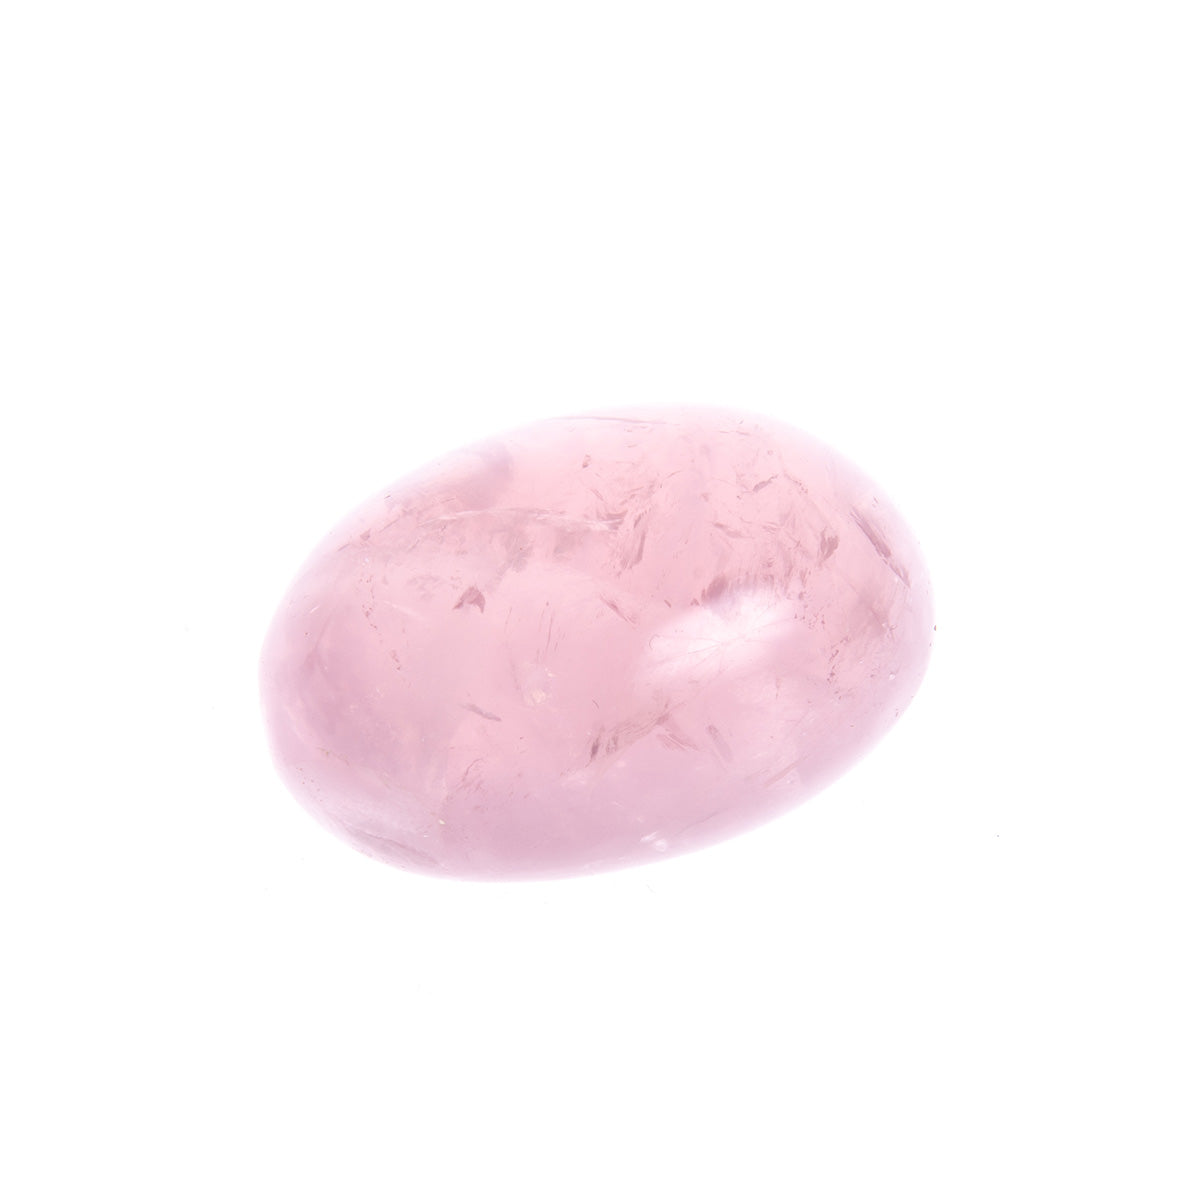 Burattato Quarzo Rosa - Le Origini pietre dure pietre semipreziose, pietre naturali